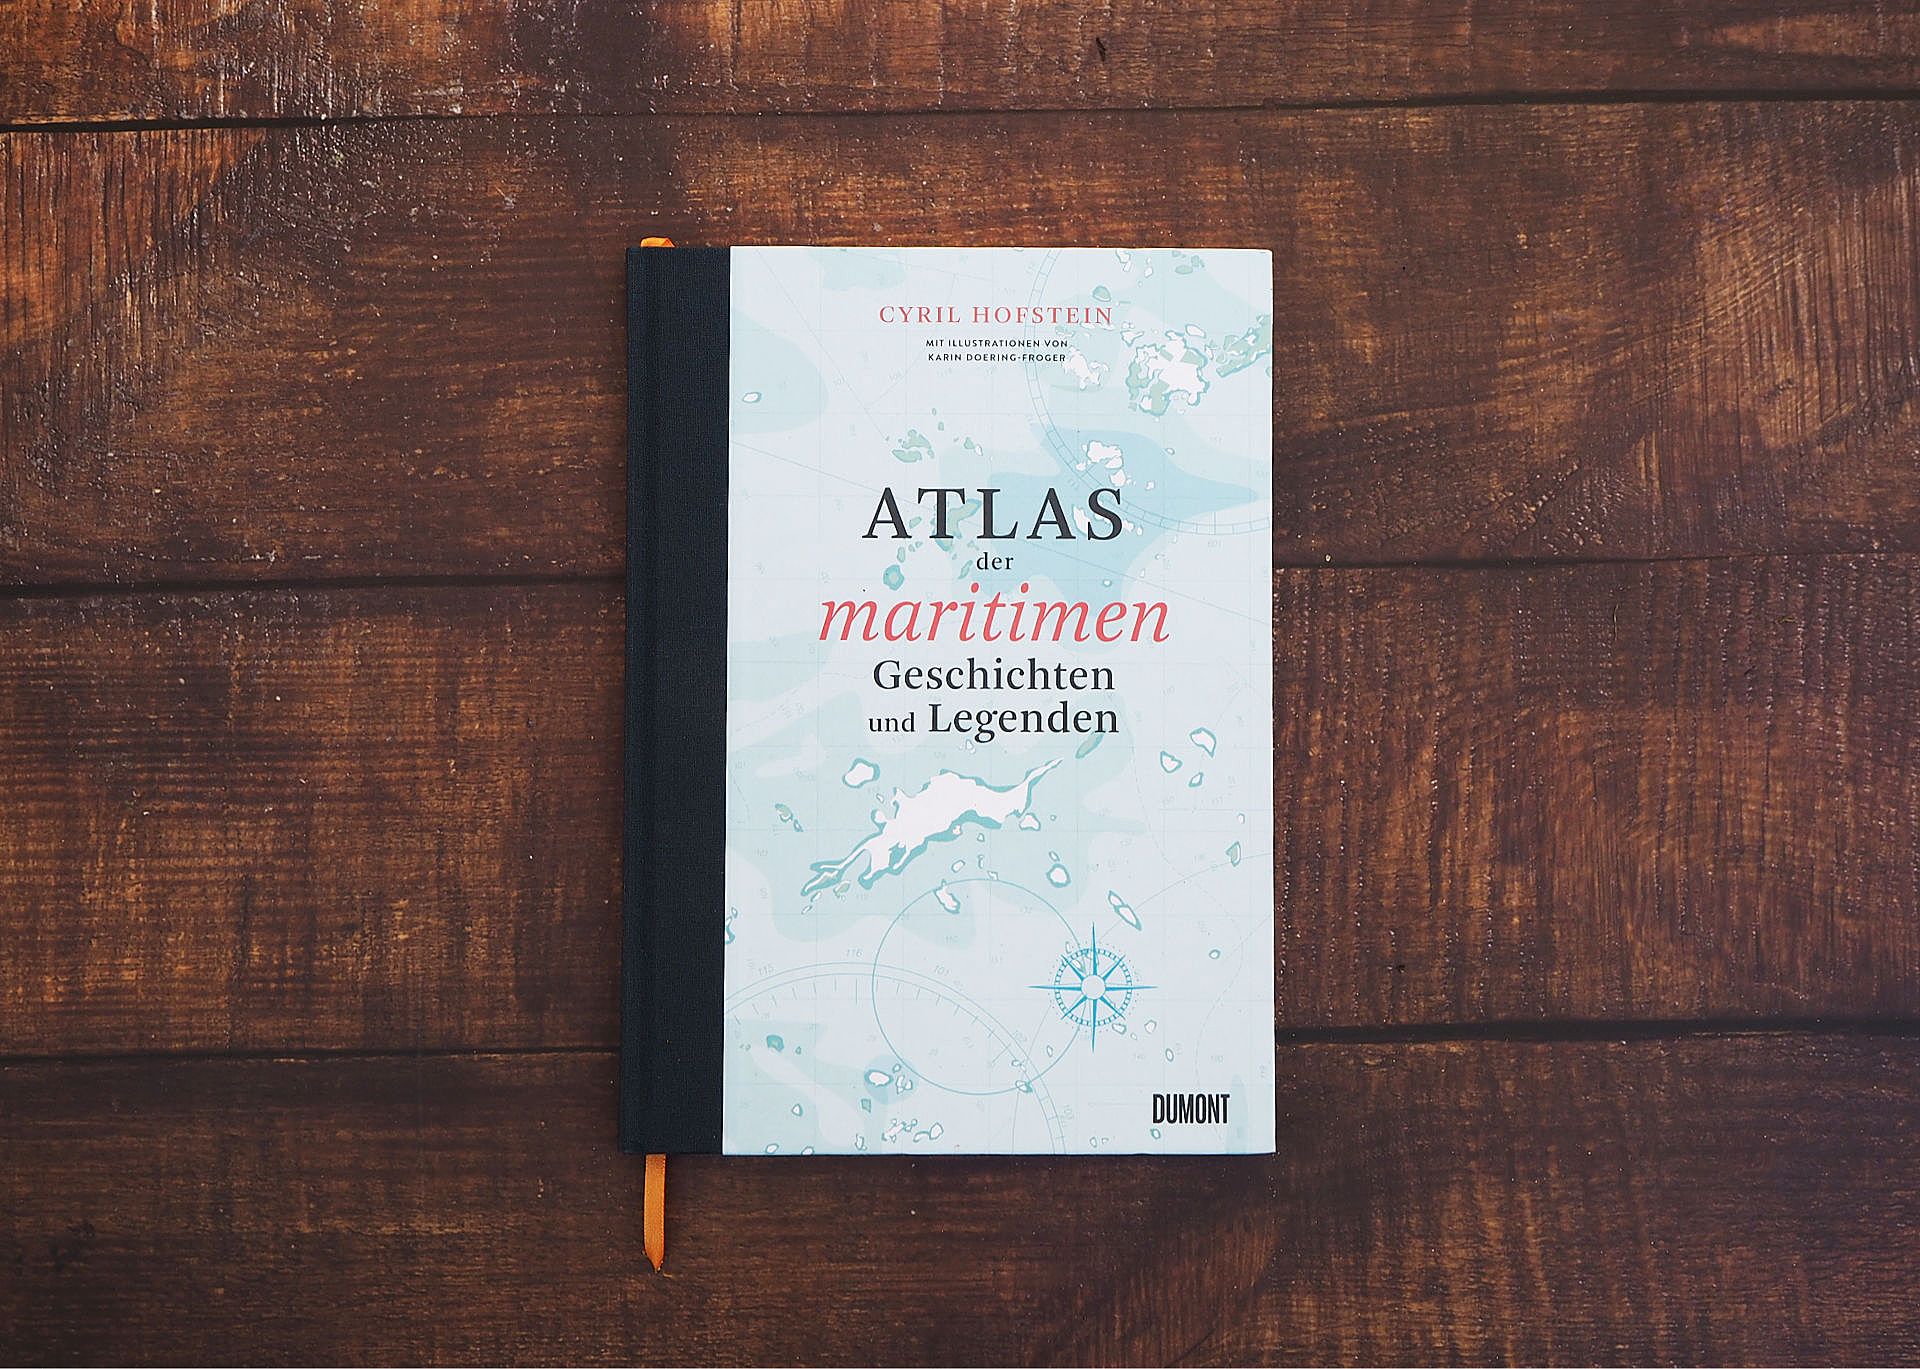 Atlas der maritimen Geschichten und Legenden • Cyril Hofstein